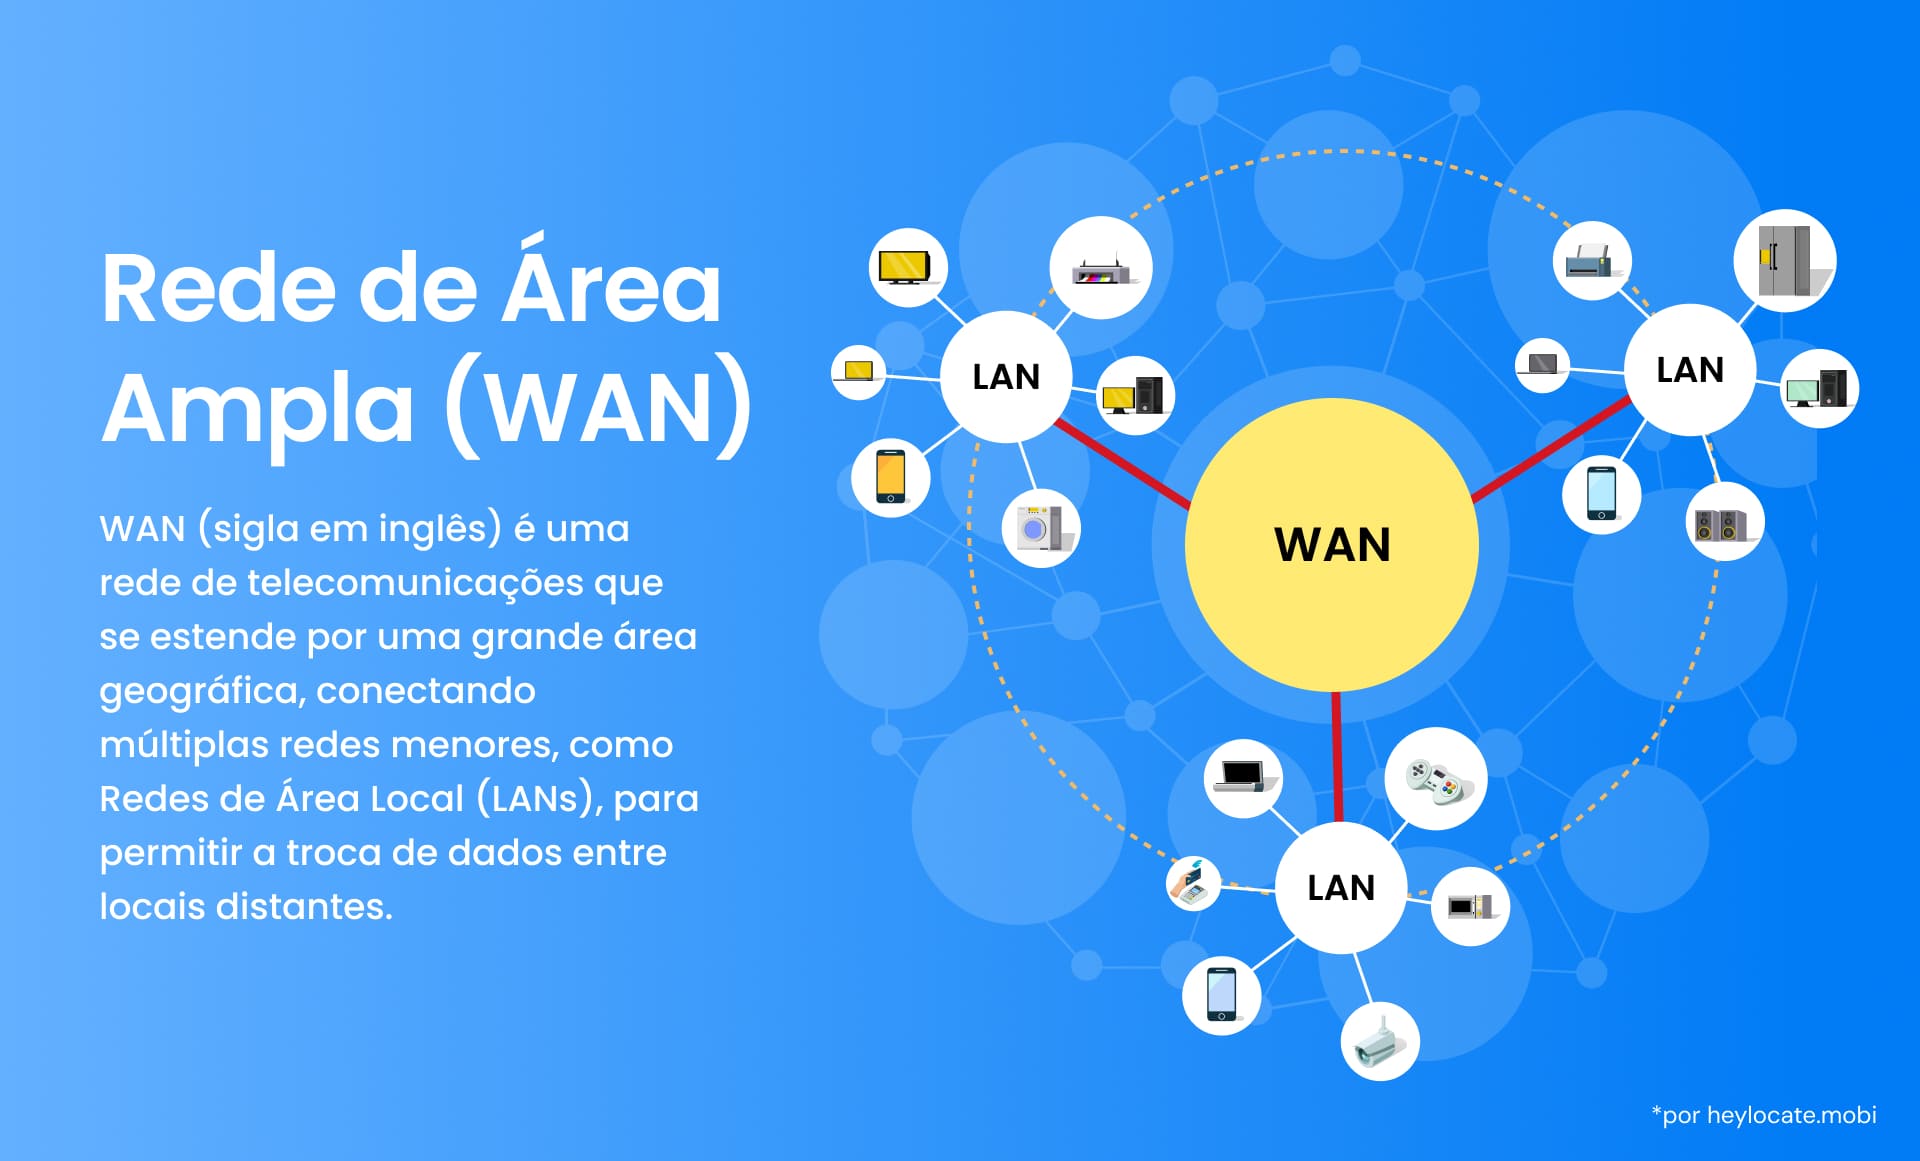 Esta imagem representa uma WAN (Wide Area Network, rede de longa distância), destacando como ela conecta várias redes menores, como LANs (Local Area Networks, redes locais), em uma vasta área geográfica para facilitar a troca de dados entre locais distantes.